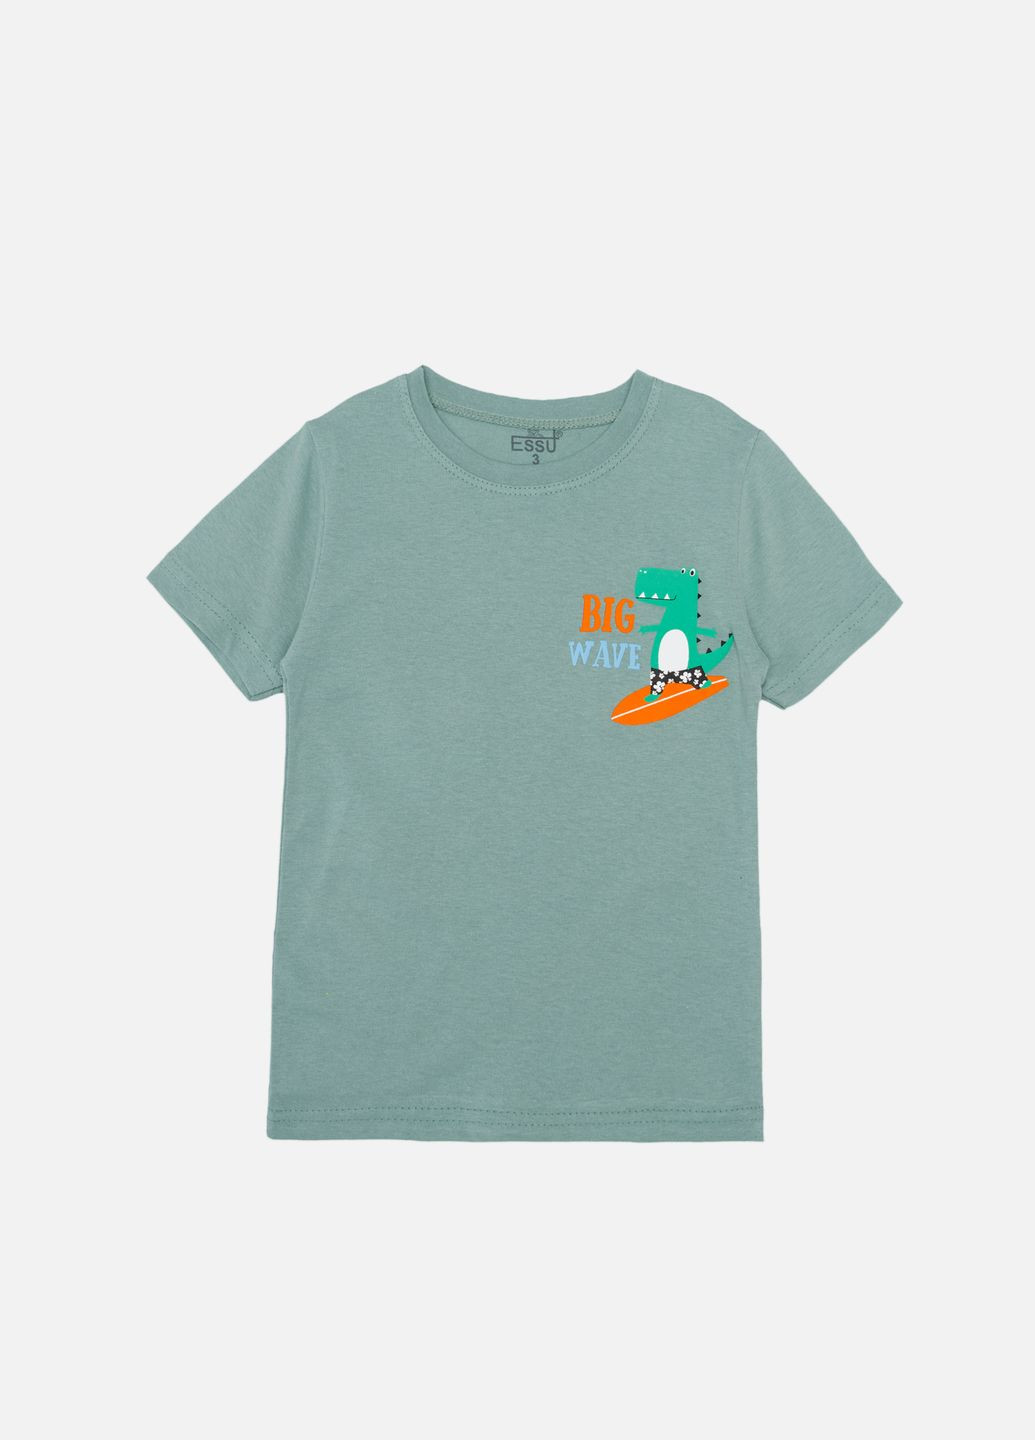 Оливкова літня футболка з коротким рукавом для хлопчика колір оливковий цб-00243907 Essu